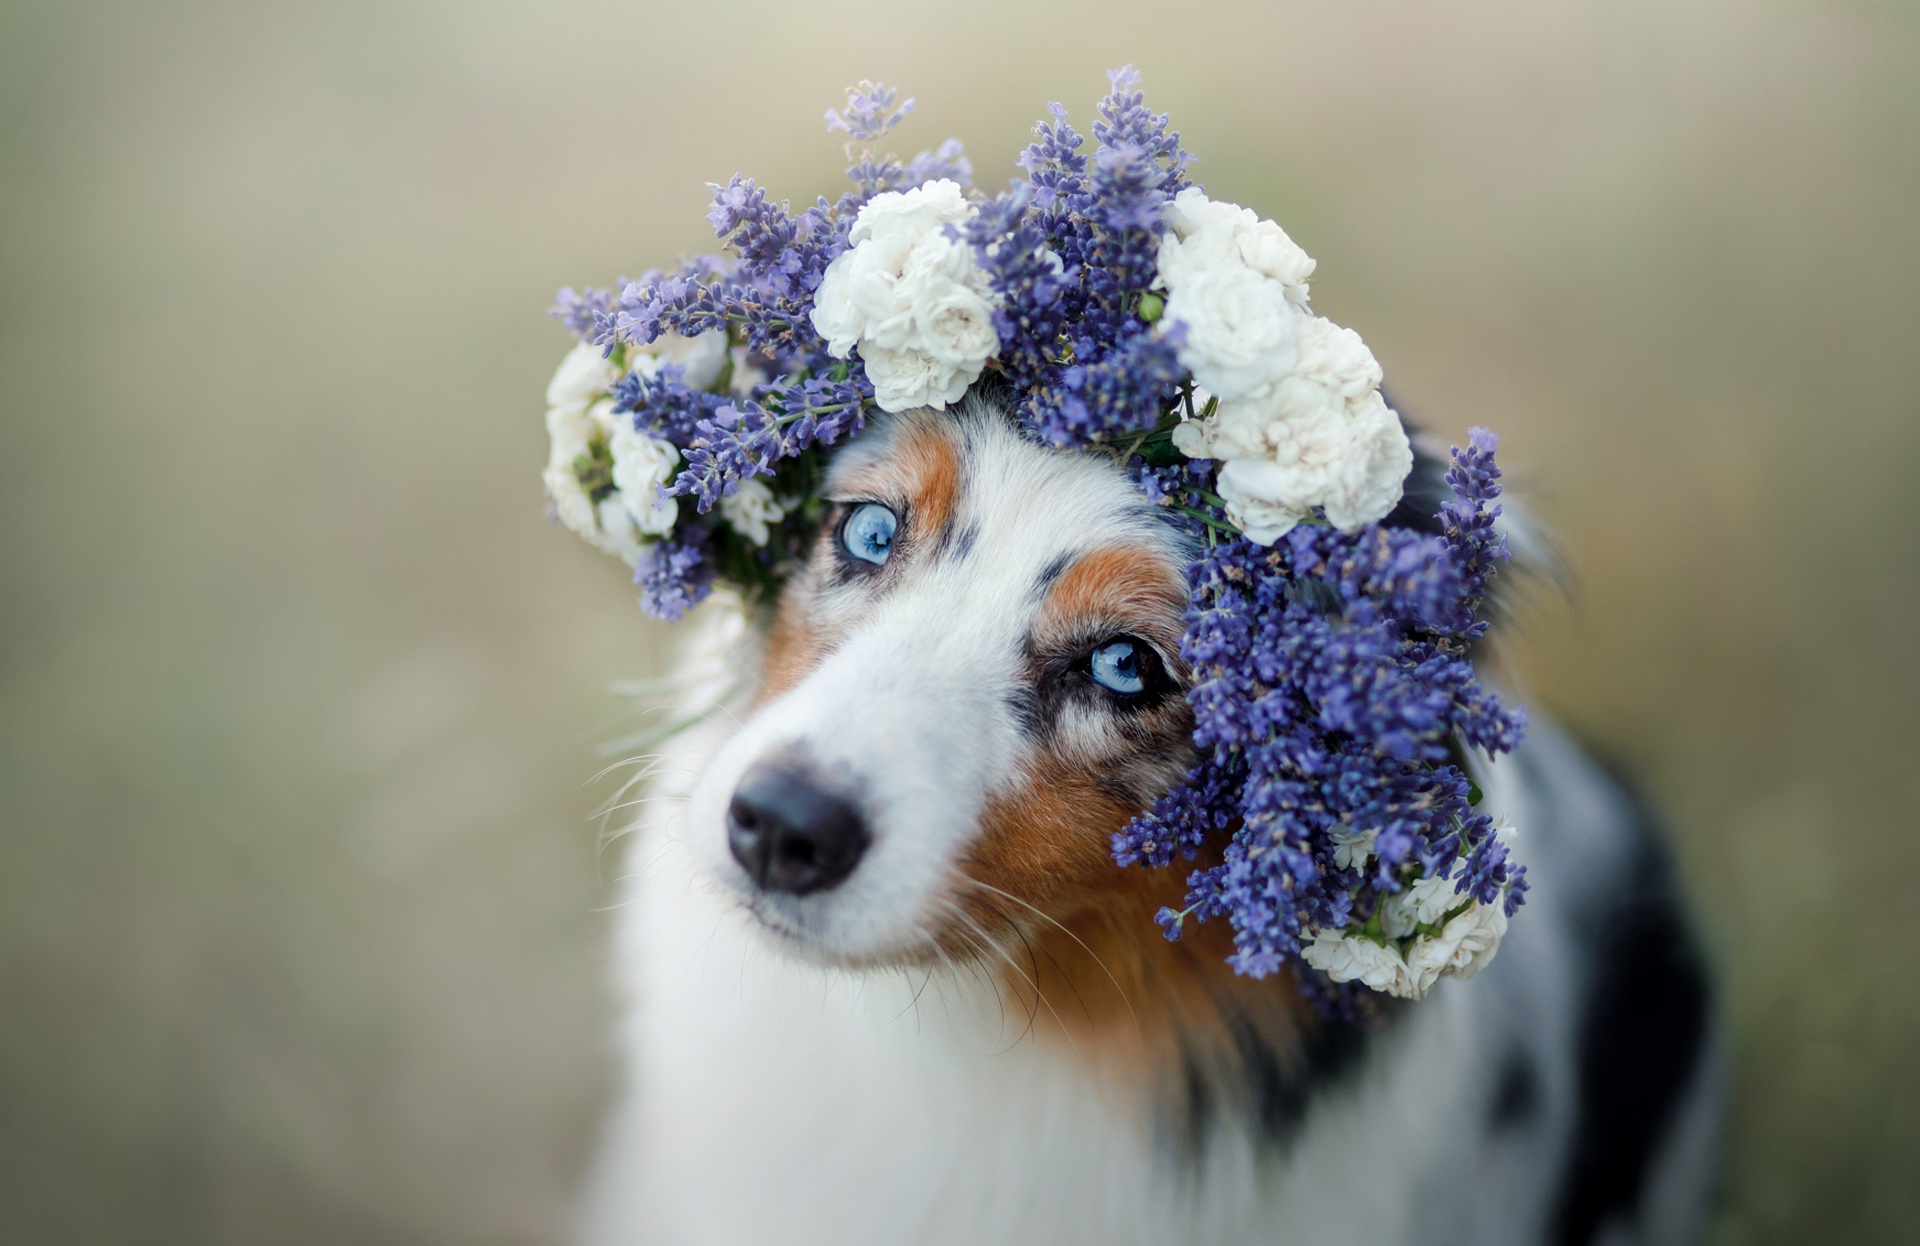 Download mobile wallpaper Dogs, Flower, Dog, Animal, Australian Shepherd, Wreath for free.